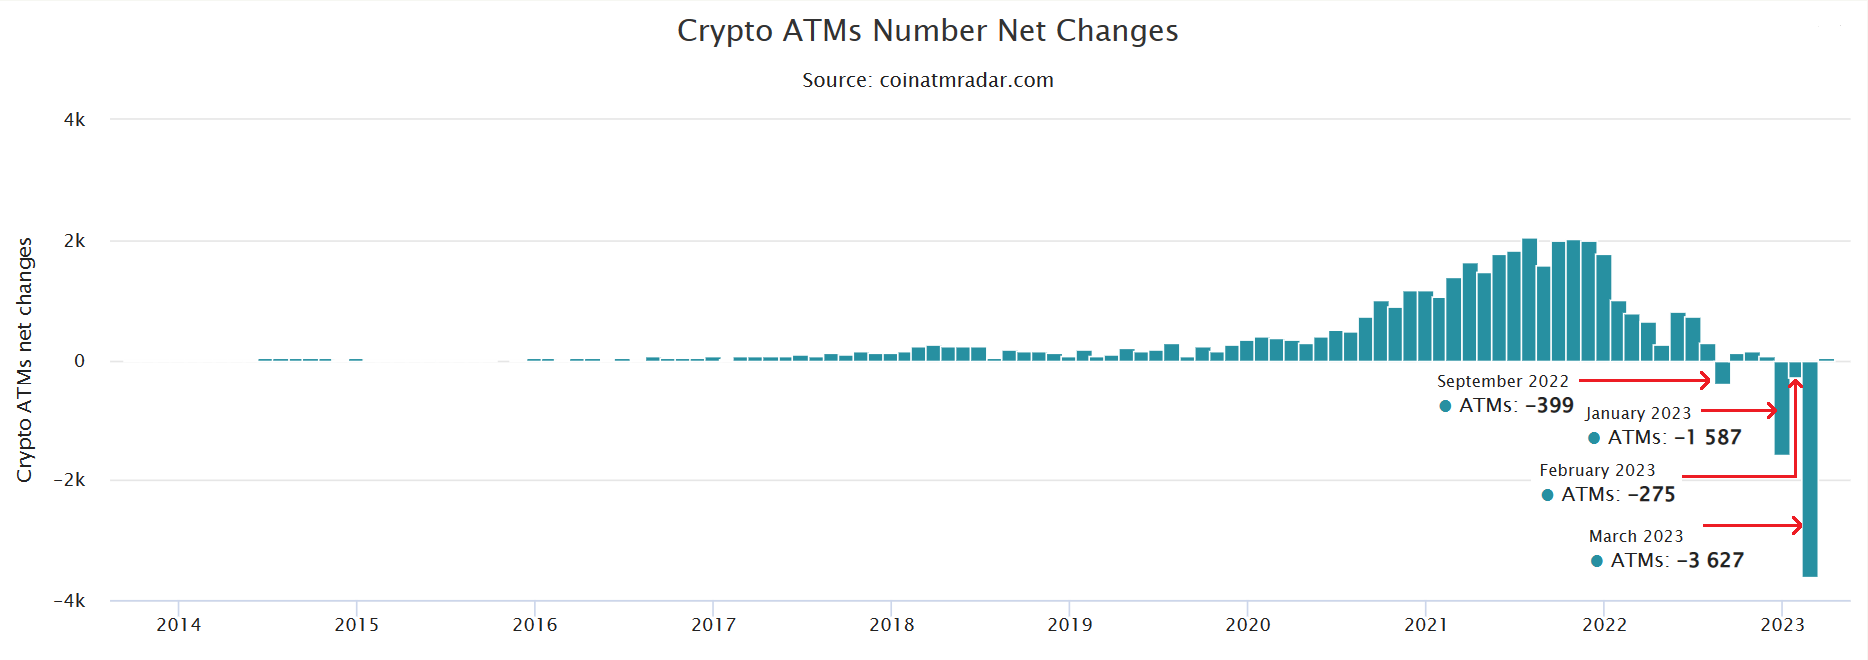 Περισσότερα από 3,600 Bitcoin ATM βγήκαν εκτός σύνδεσης καταγράφοντας τη μεγαλύτερη μηνιαία πτώση